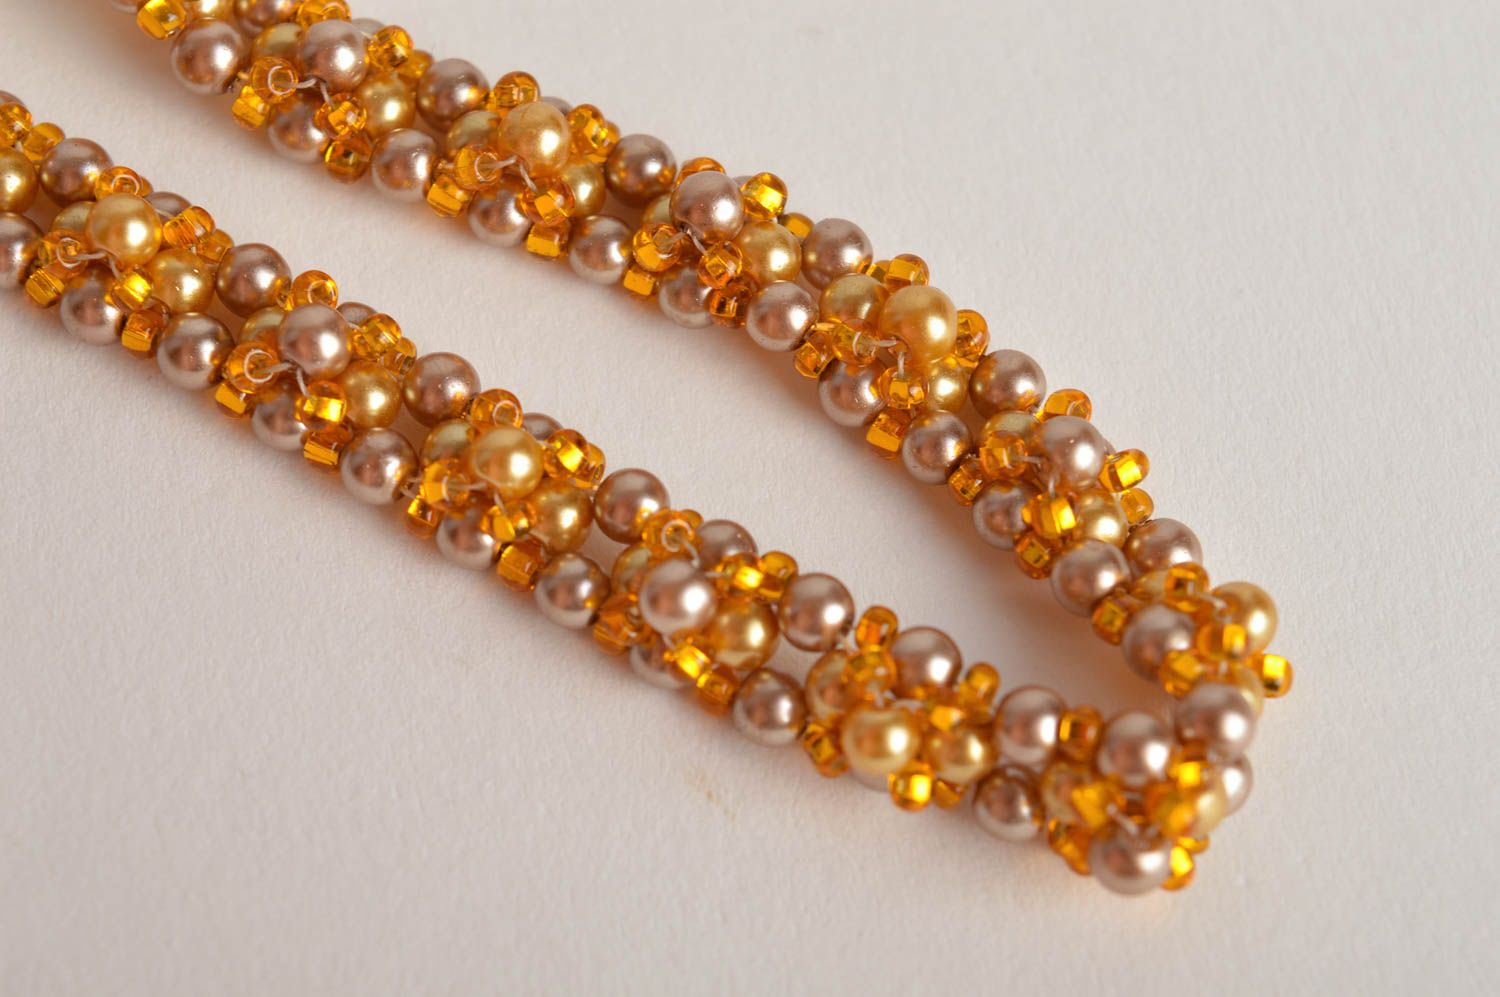 Golden beads cord bracelet wrist all-size bracelet for girls photo 4